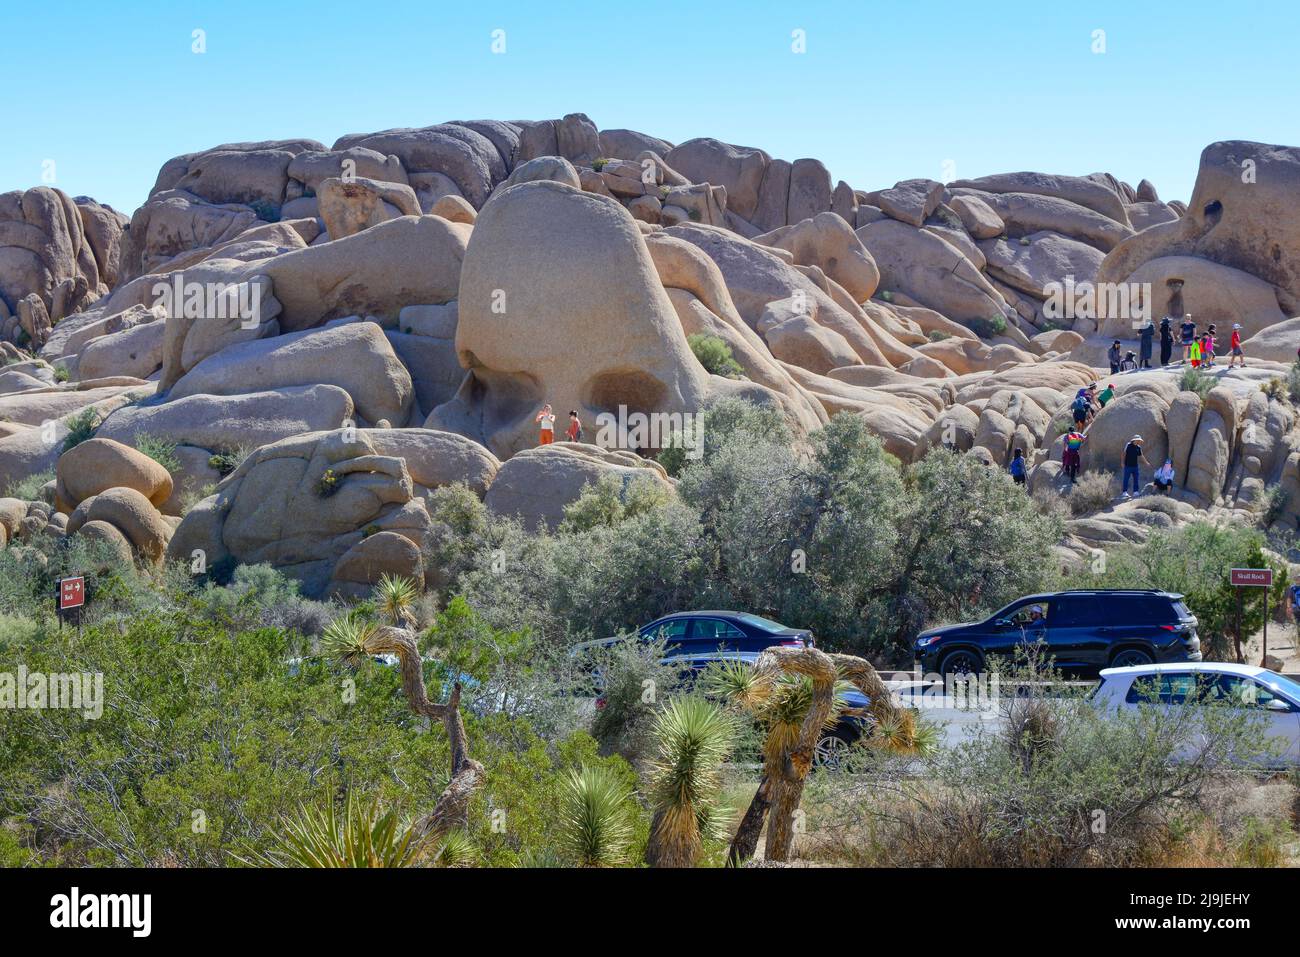 'Shkull Rock', Un point de repère dans le parc national de Joshua Tree, est escaladé par les touristes sur les rochers uniques, dans le désert de Mojave, CA Banque D'Images